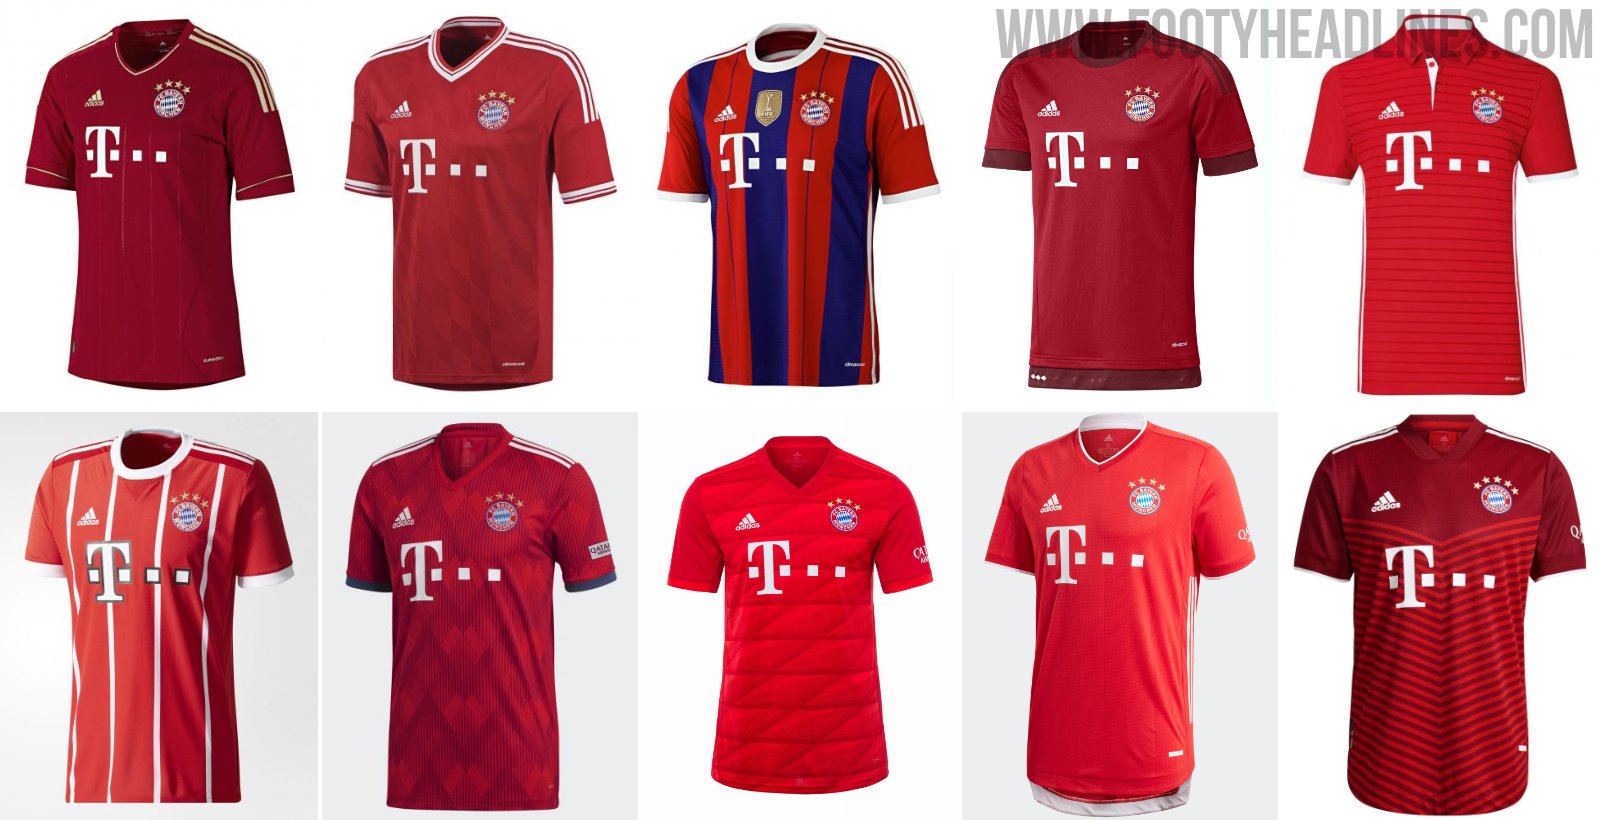 launching new FC Bayern Munich 2020/21 home jersey – a classic